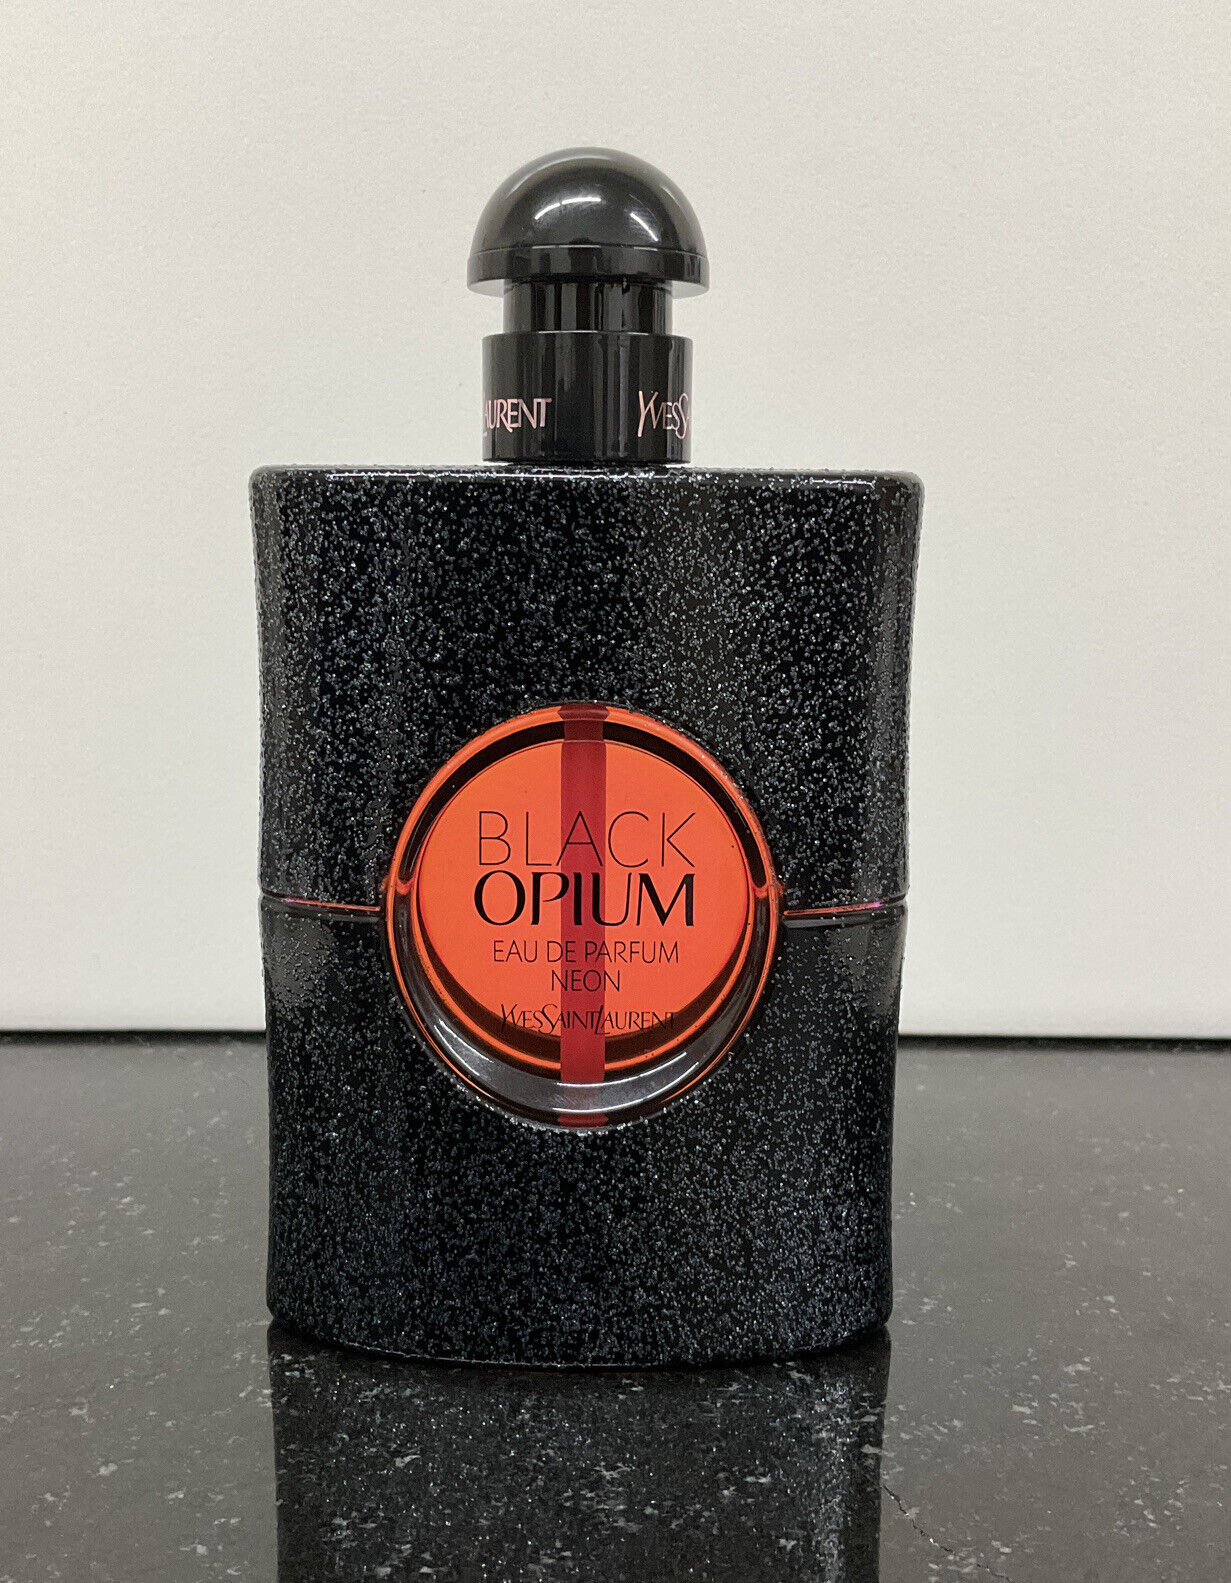 Black Opium Neon by Yves Saint Laurent Eau de Parfum Spray 2.5 oz 